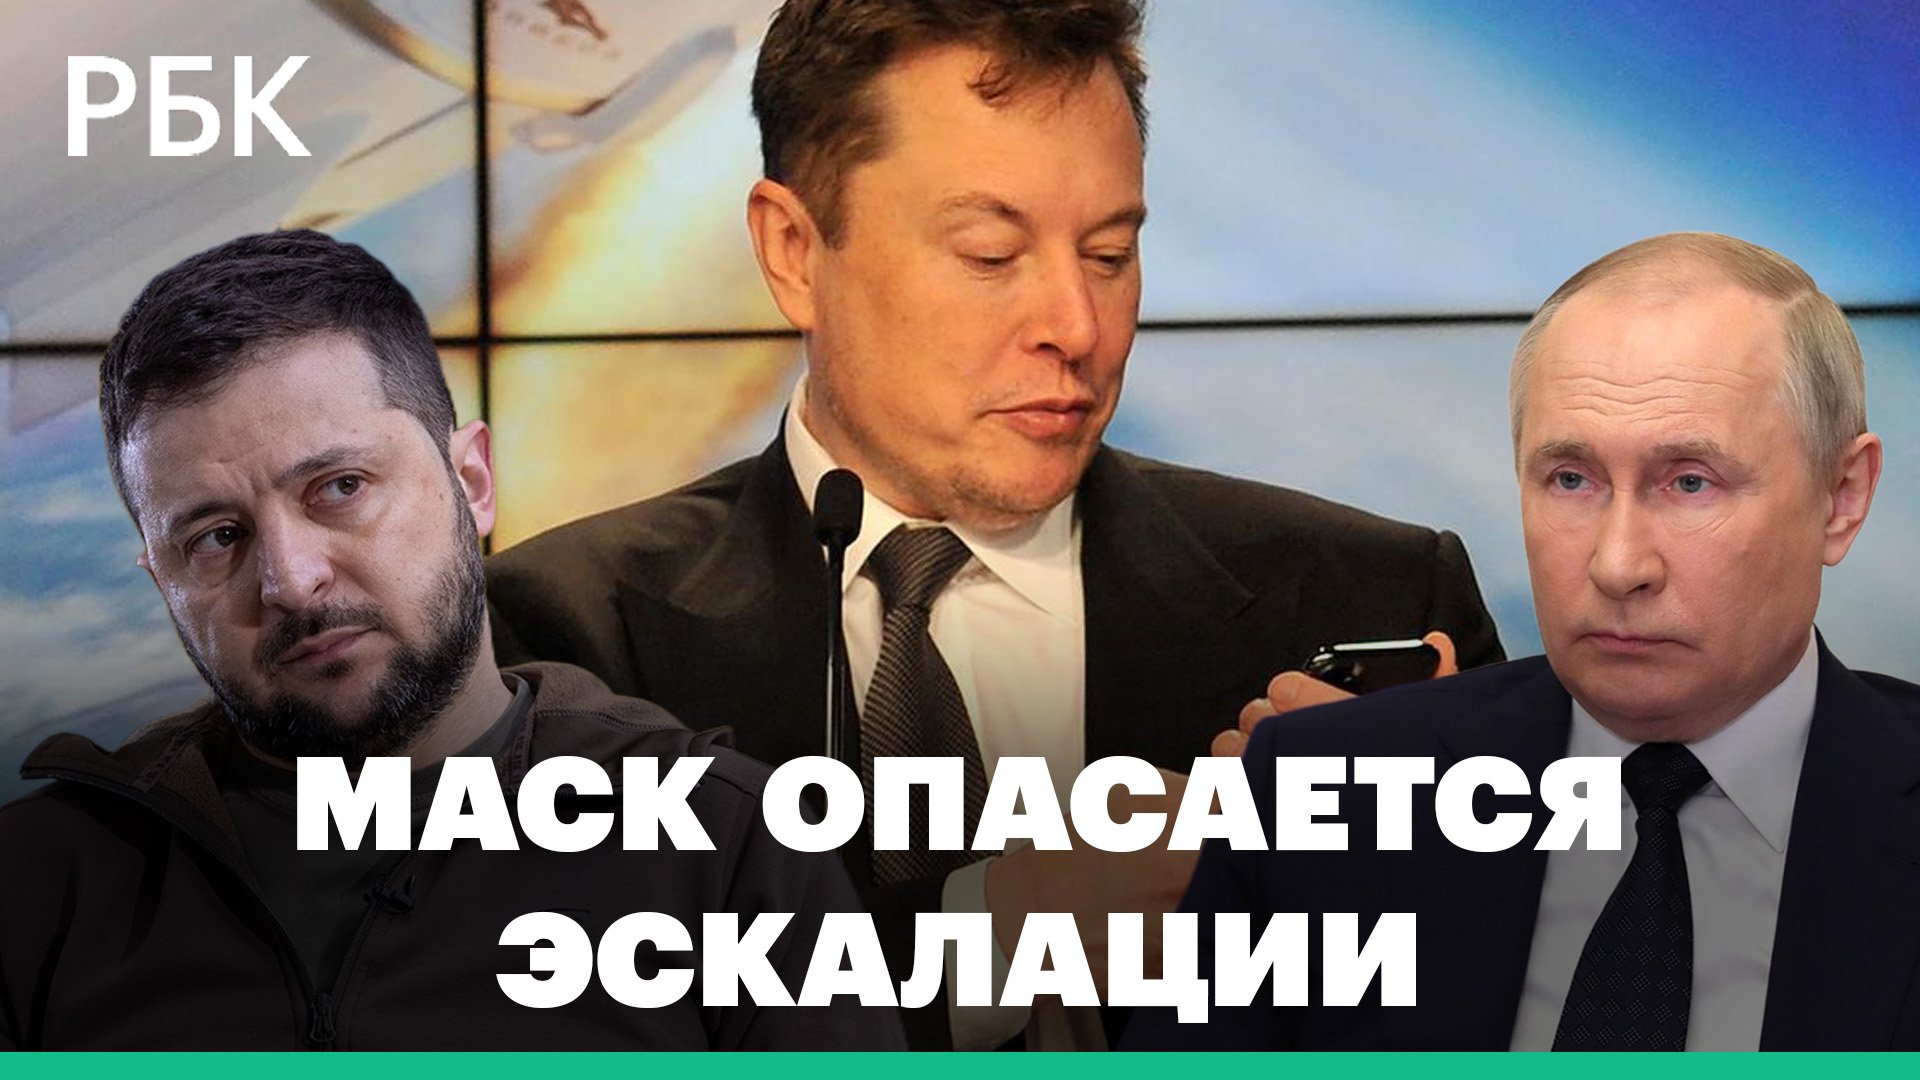 Как Илон Маск разозлил Киев. Реакция на посты основателя компаний Tesla и SpaceX